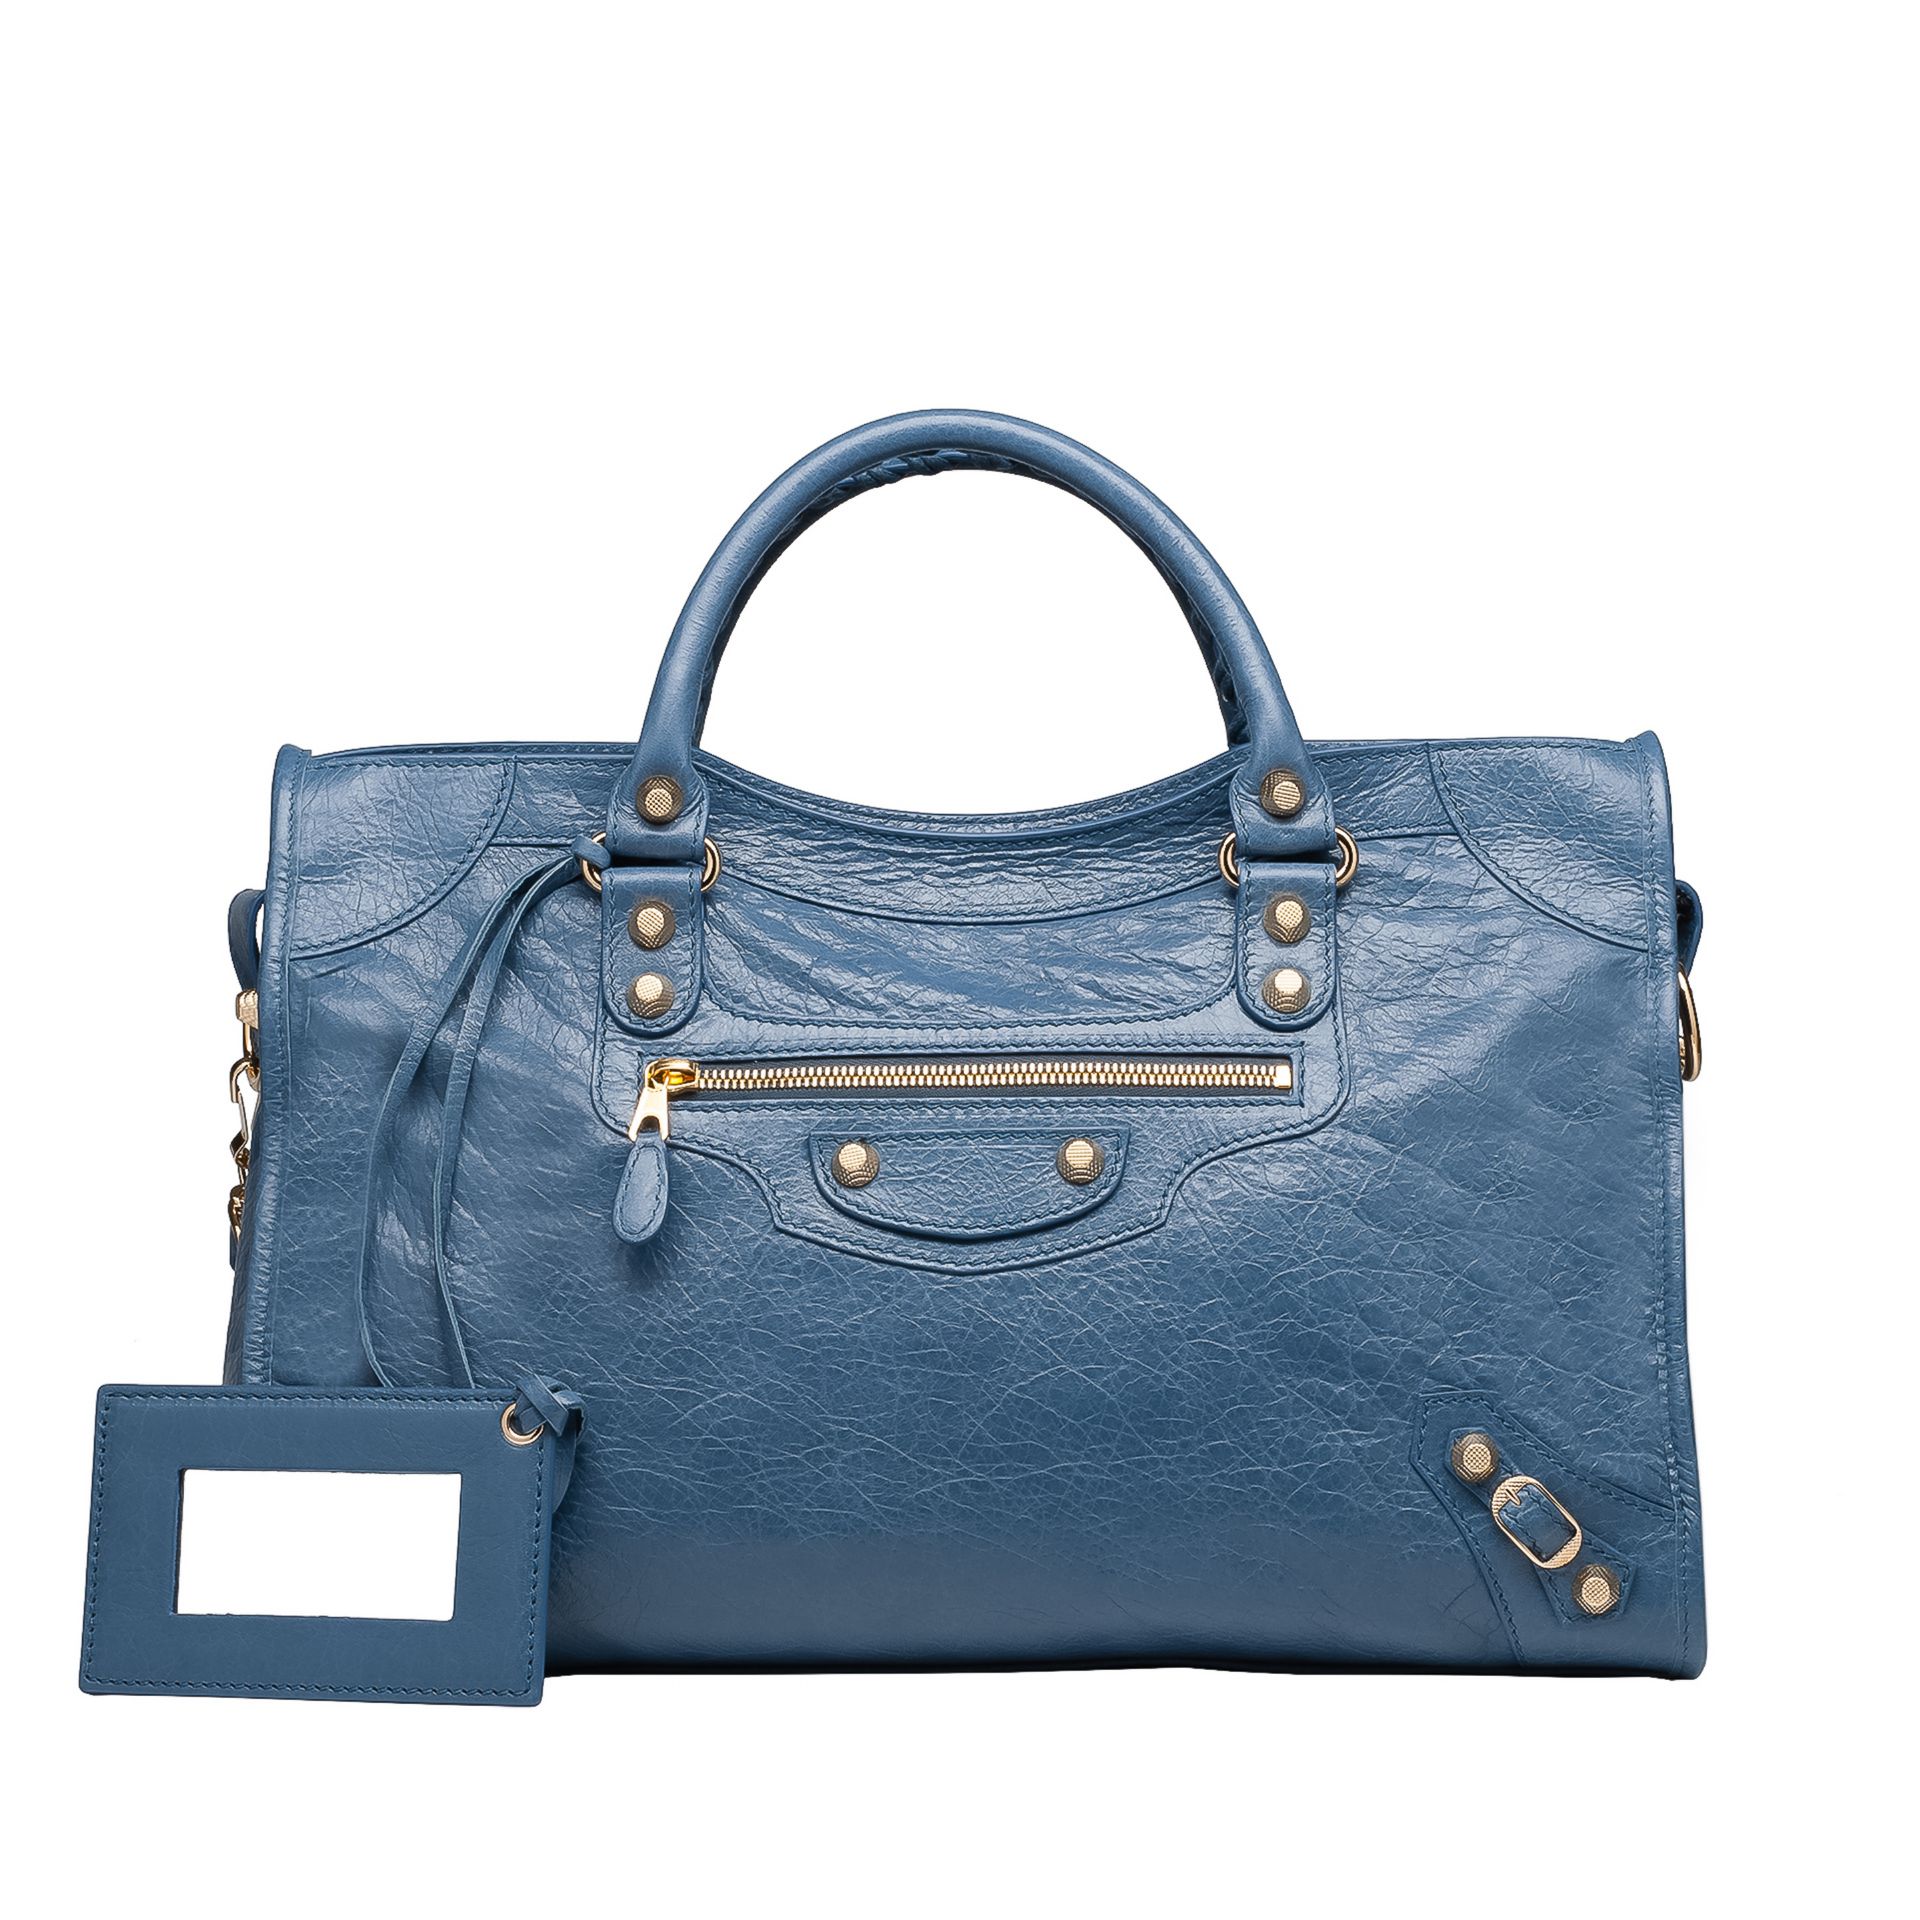 Balenciaga Giant 12 Gold City - Women's Top Handle Bag